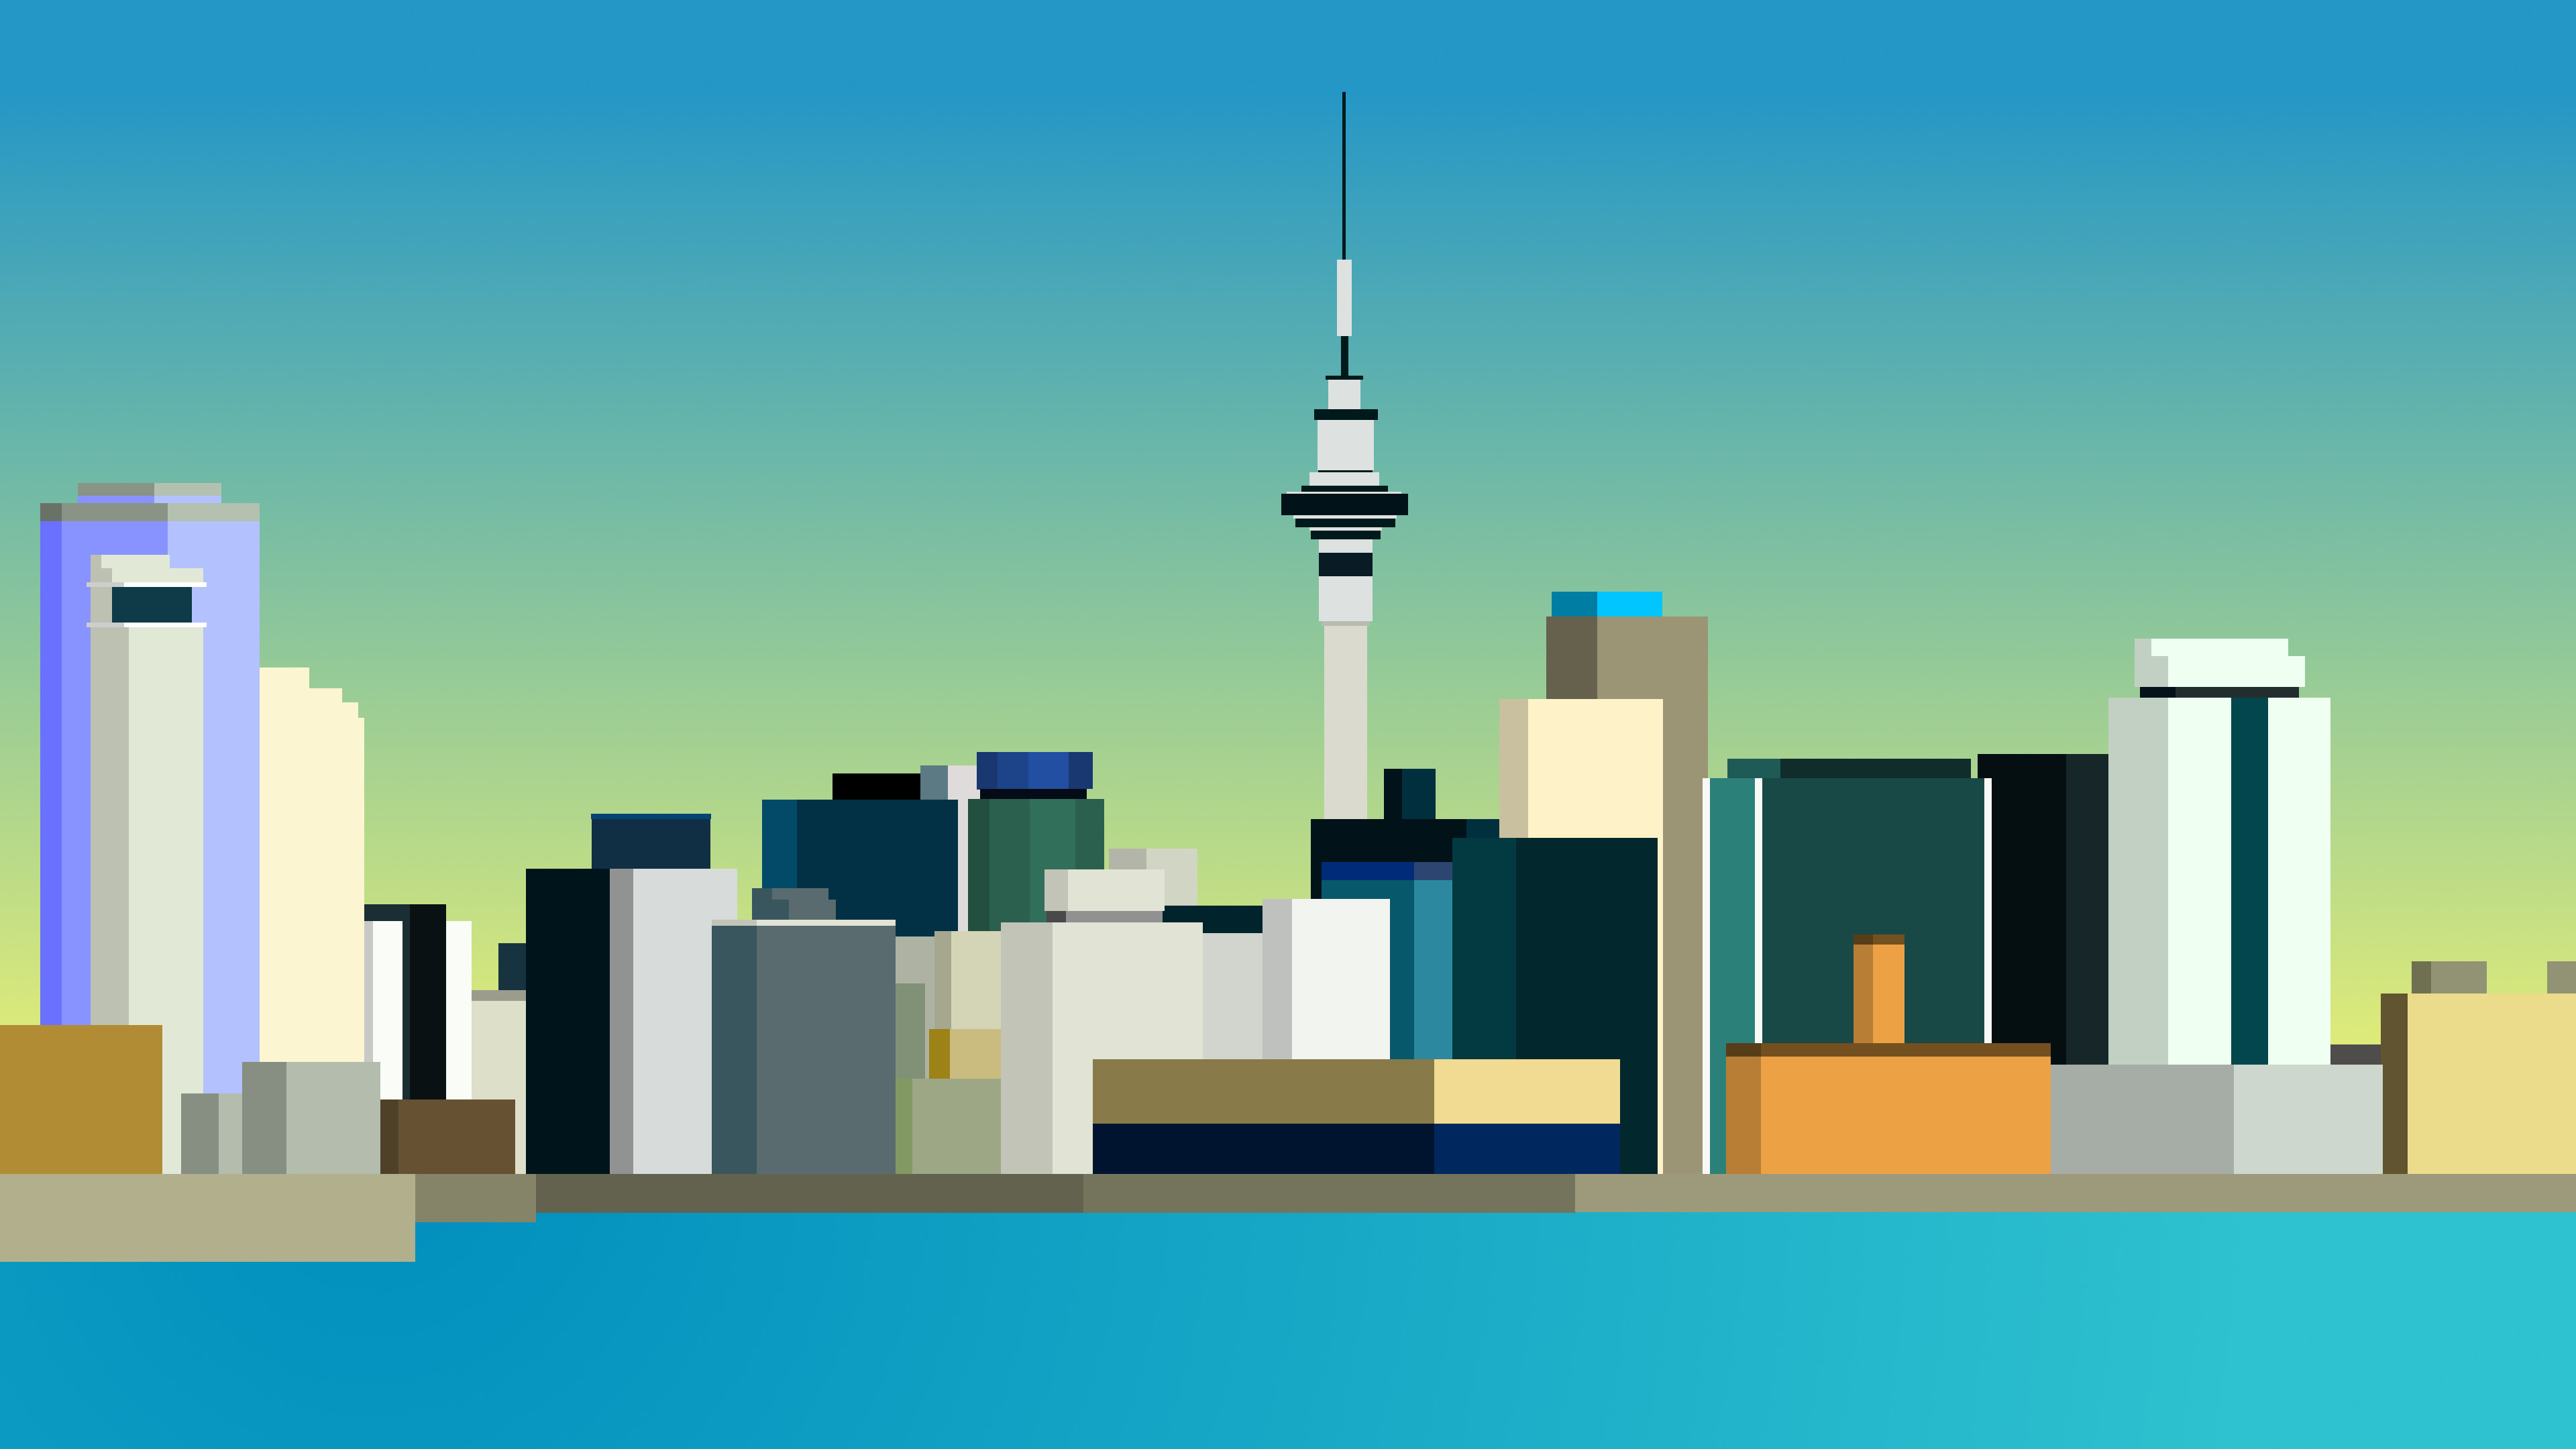 8 Bit Auckland Skyline Wallpaper by CurtisBell